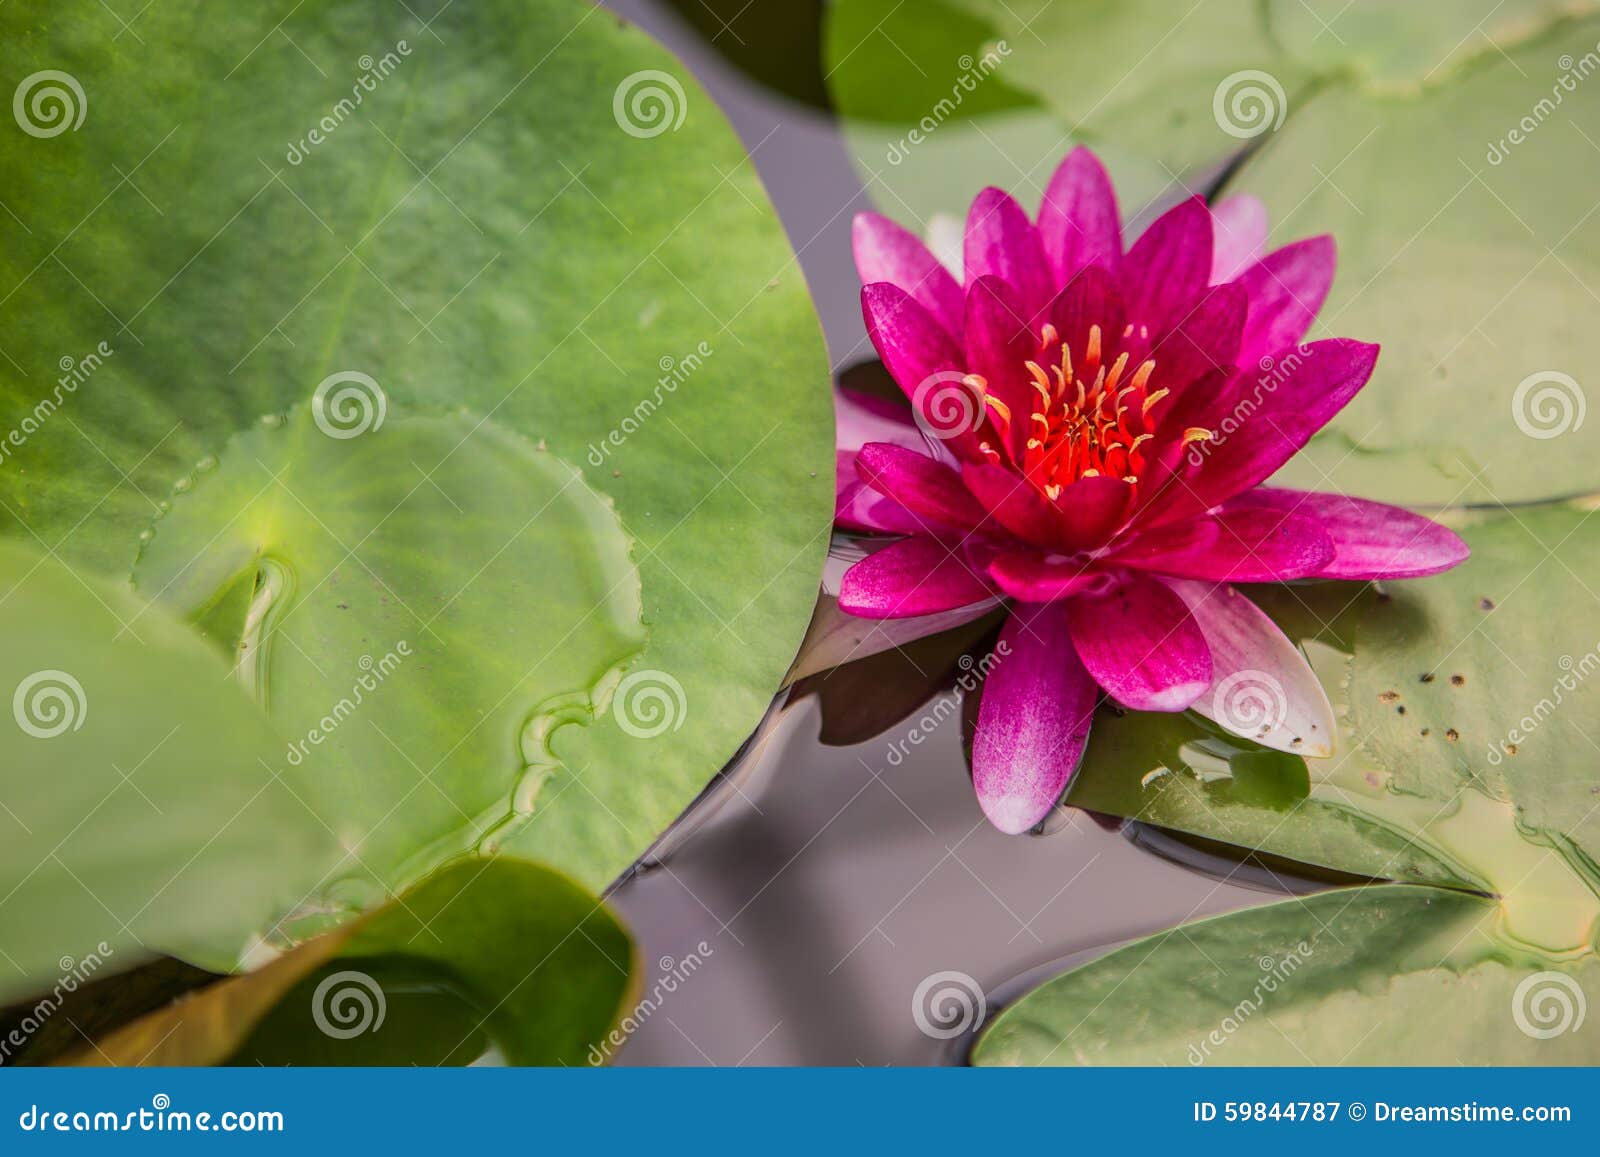 Un petit lotus rose dans l'eau